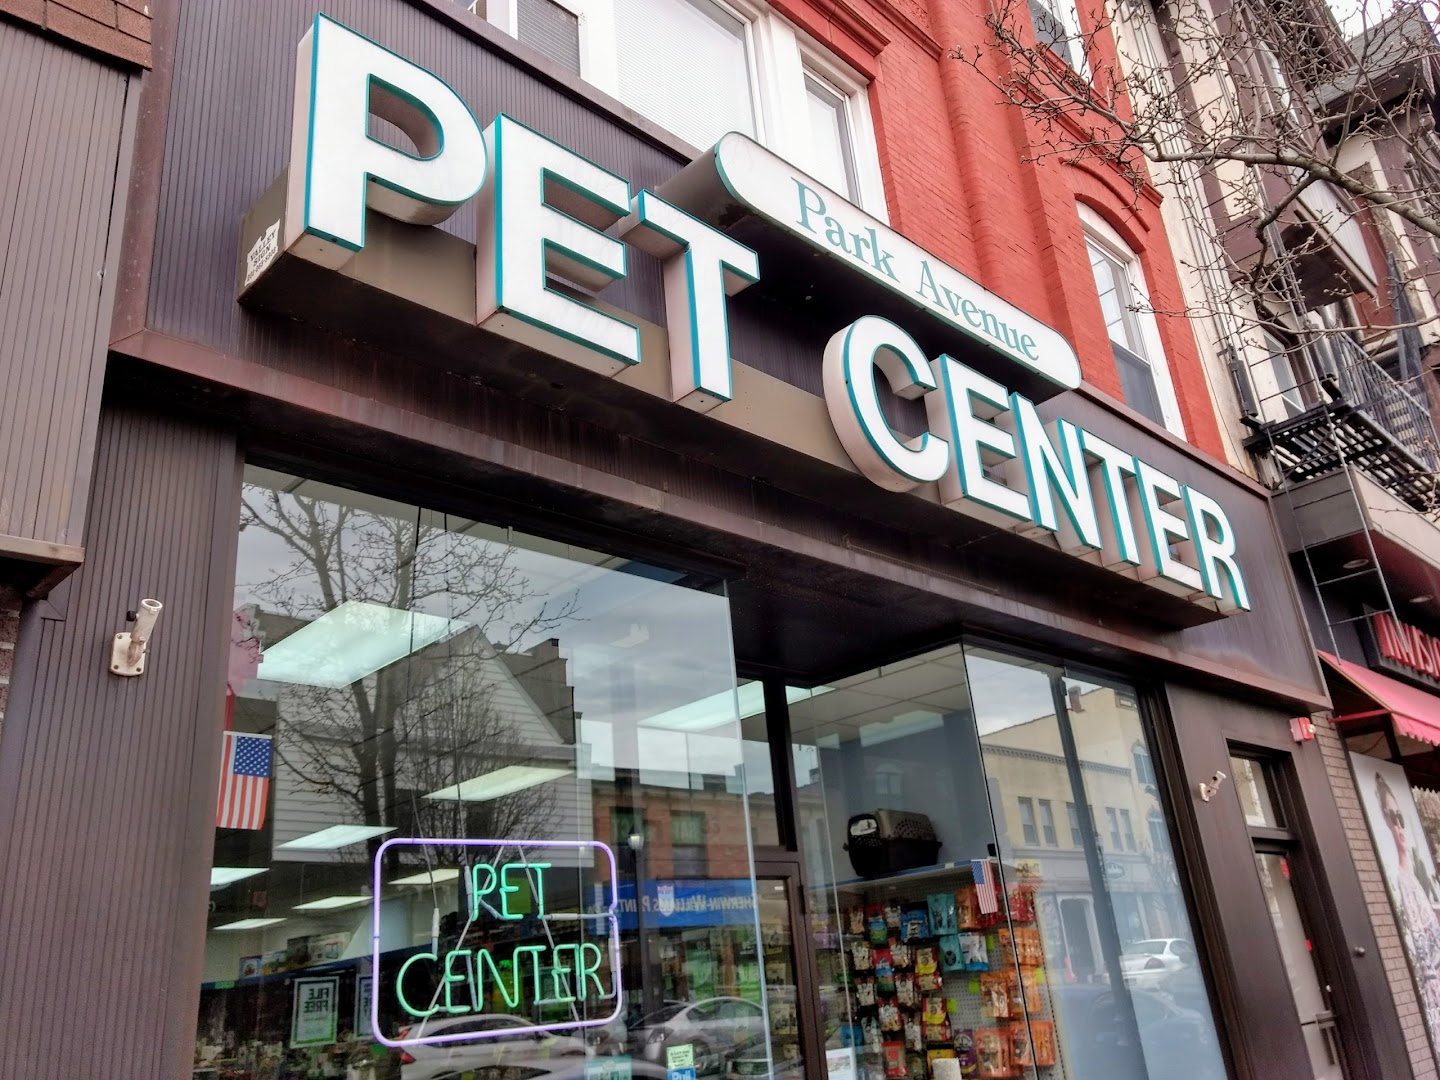 Park Avenue Pet Center